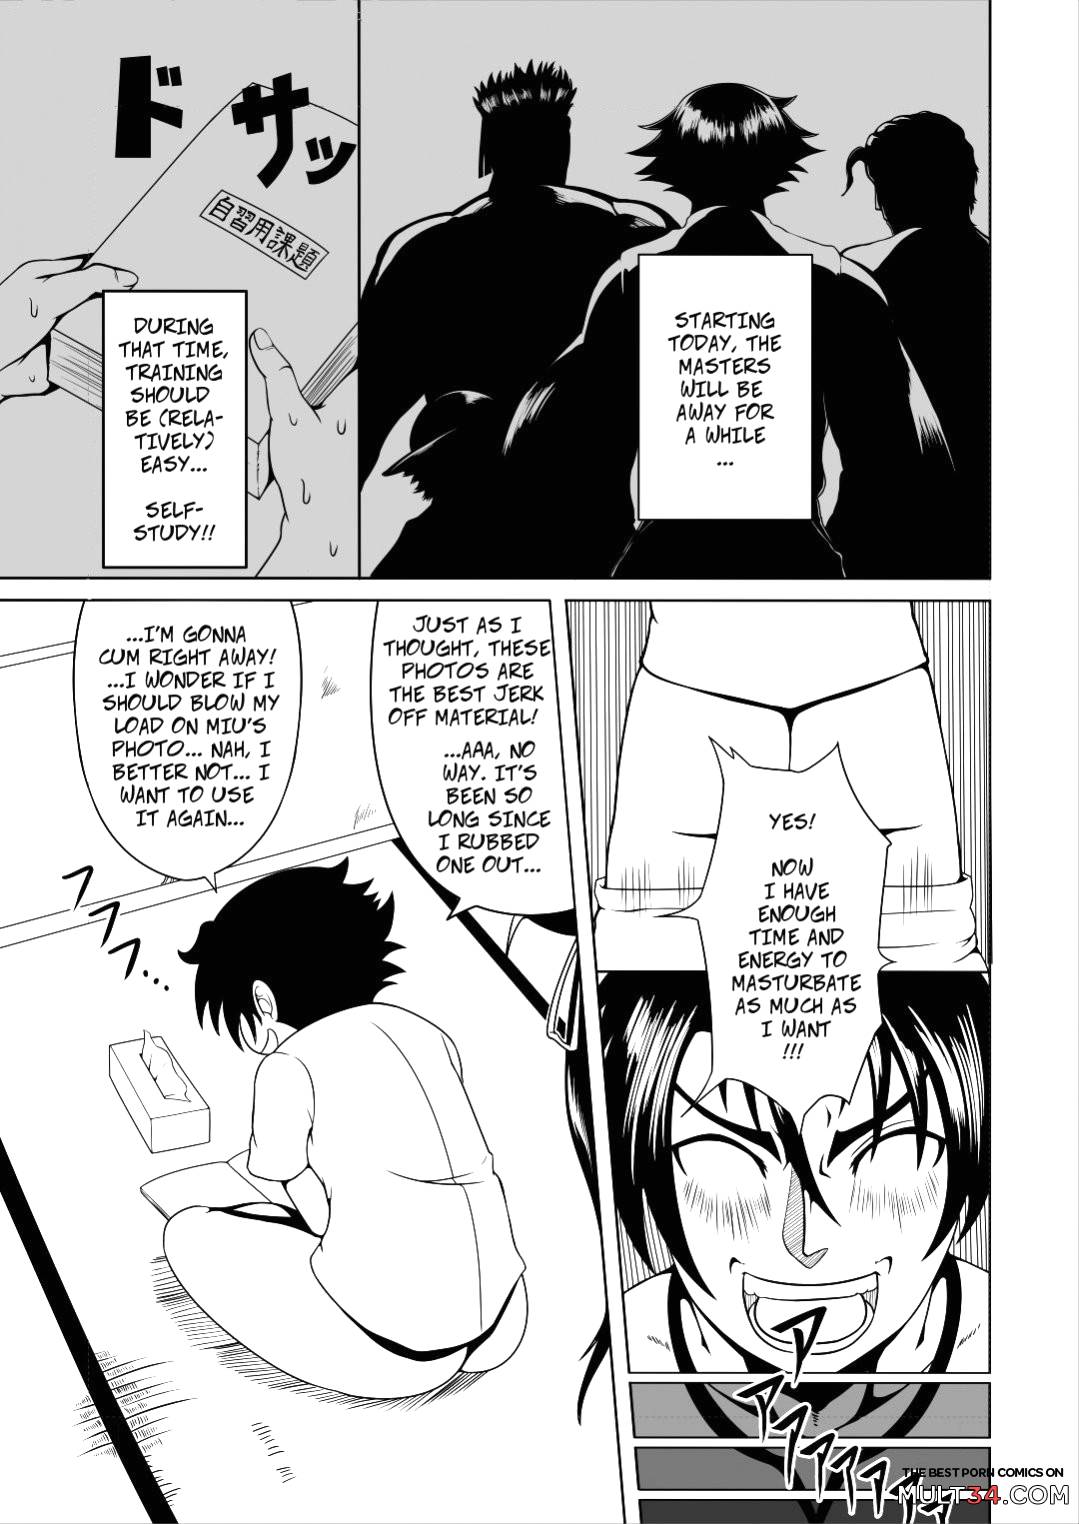 History's Strongest Bitch: Shigure Kosaka page 3